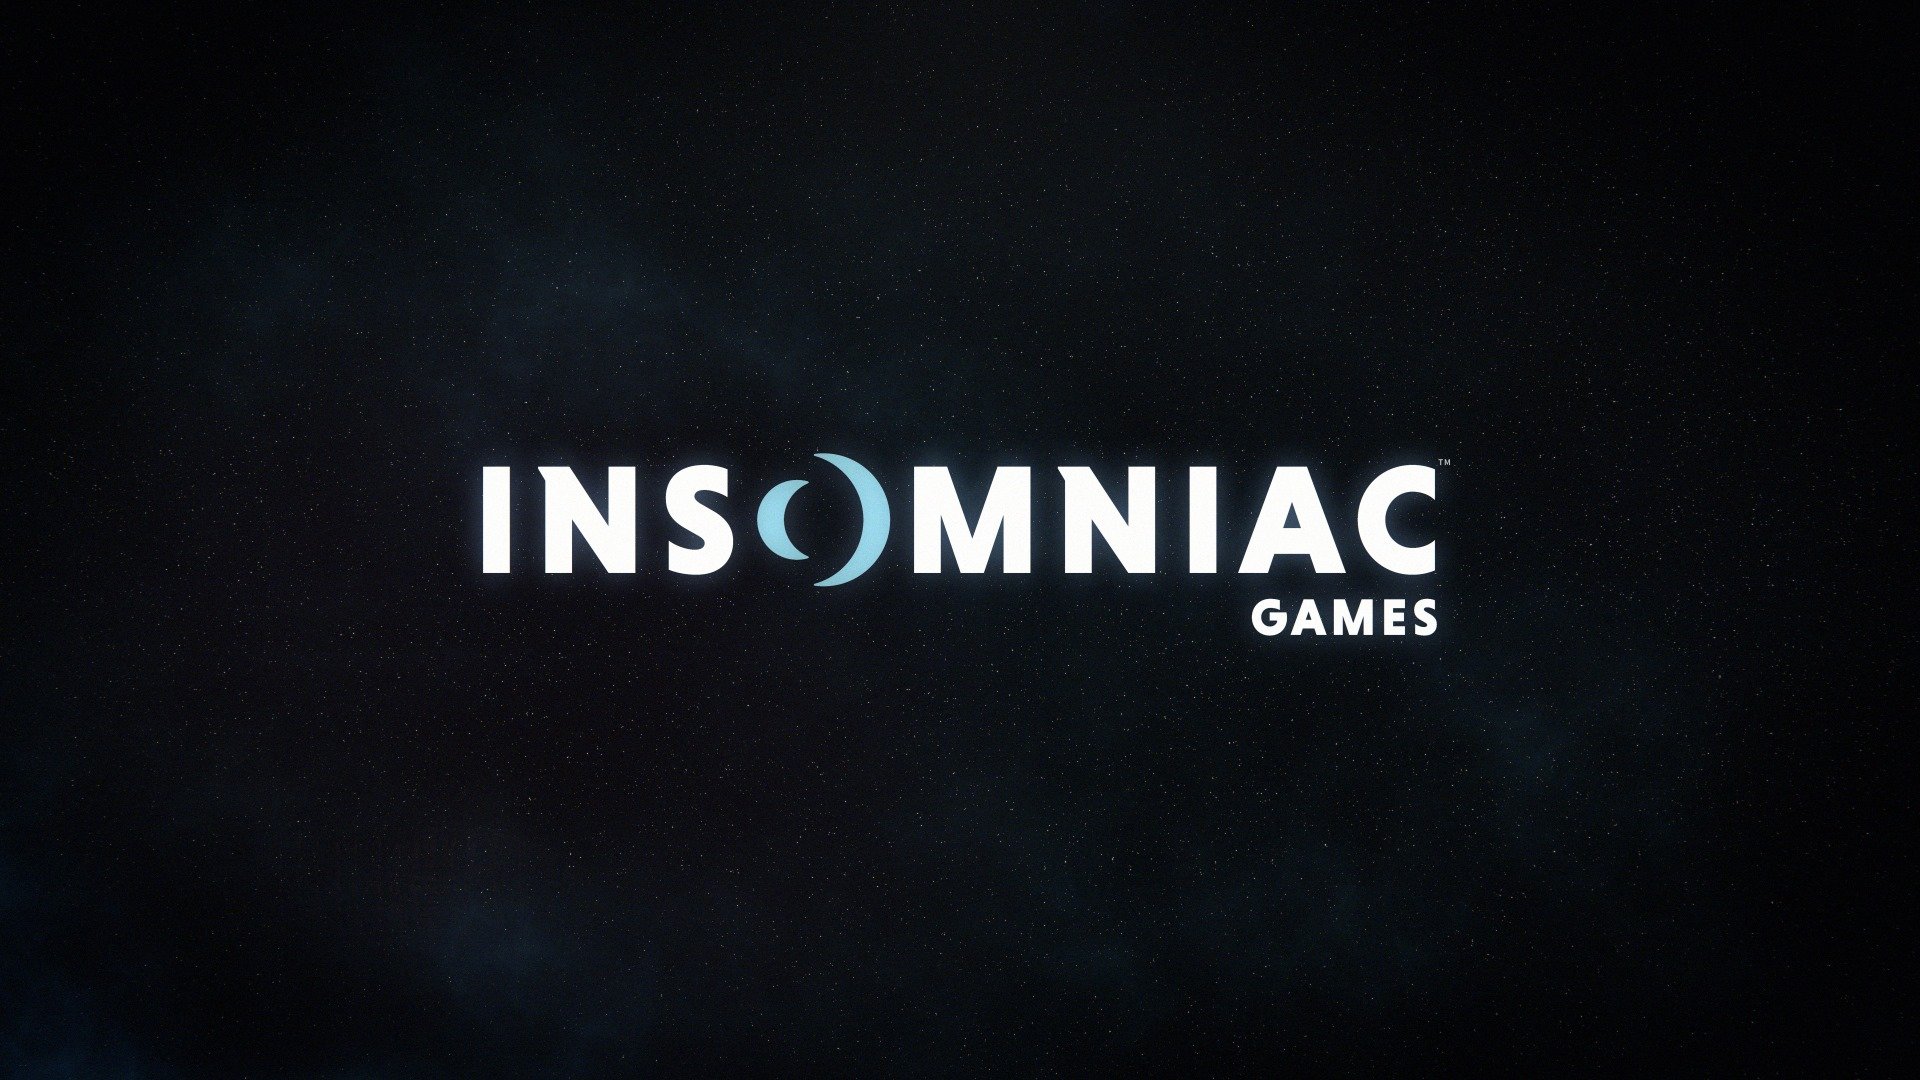 Sony pagó $229 millones de dólares cuando adquirió Insomniac Games